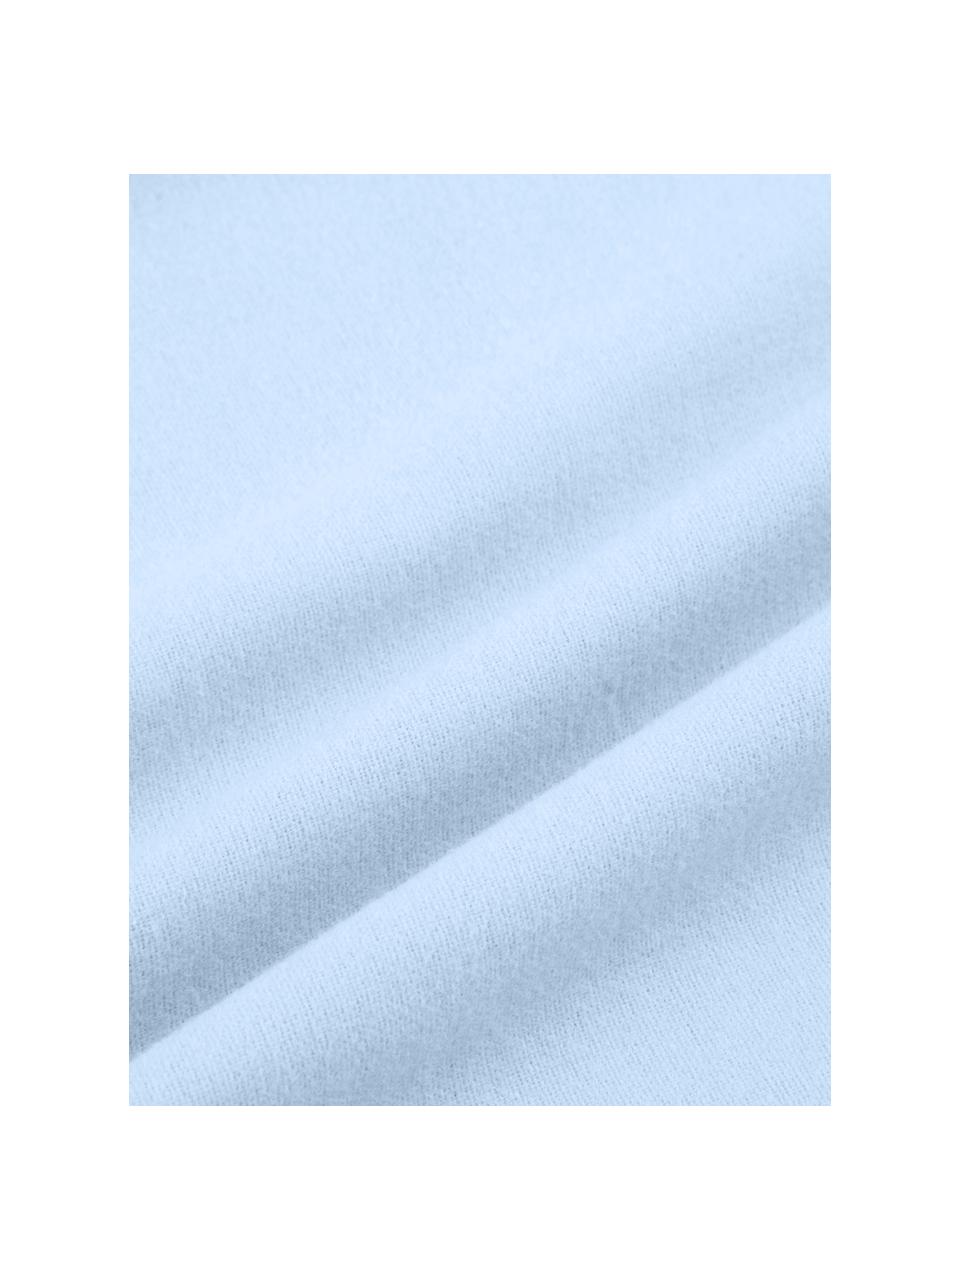 Poszewka na poduszkę z flaneli Biba, 2 szt., Jasny niebieski, S 40 x D 80 cm